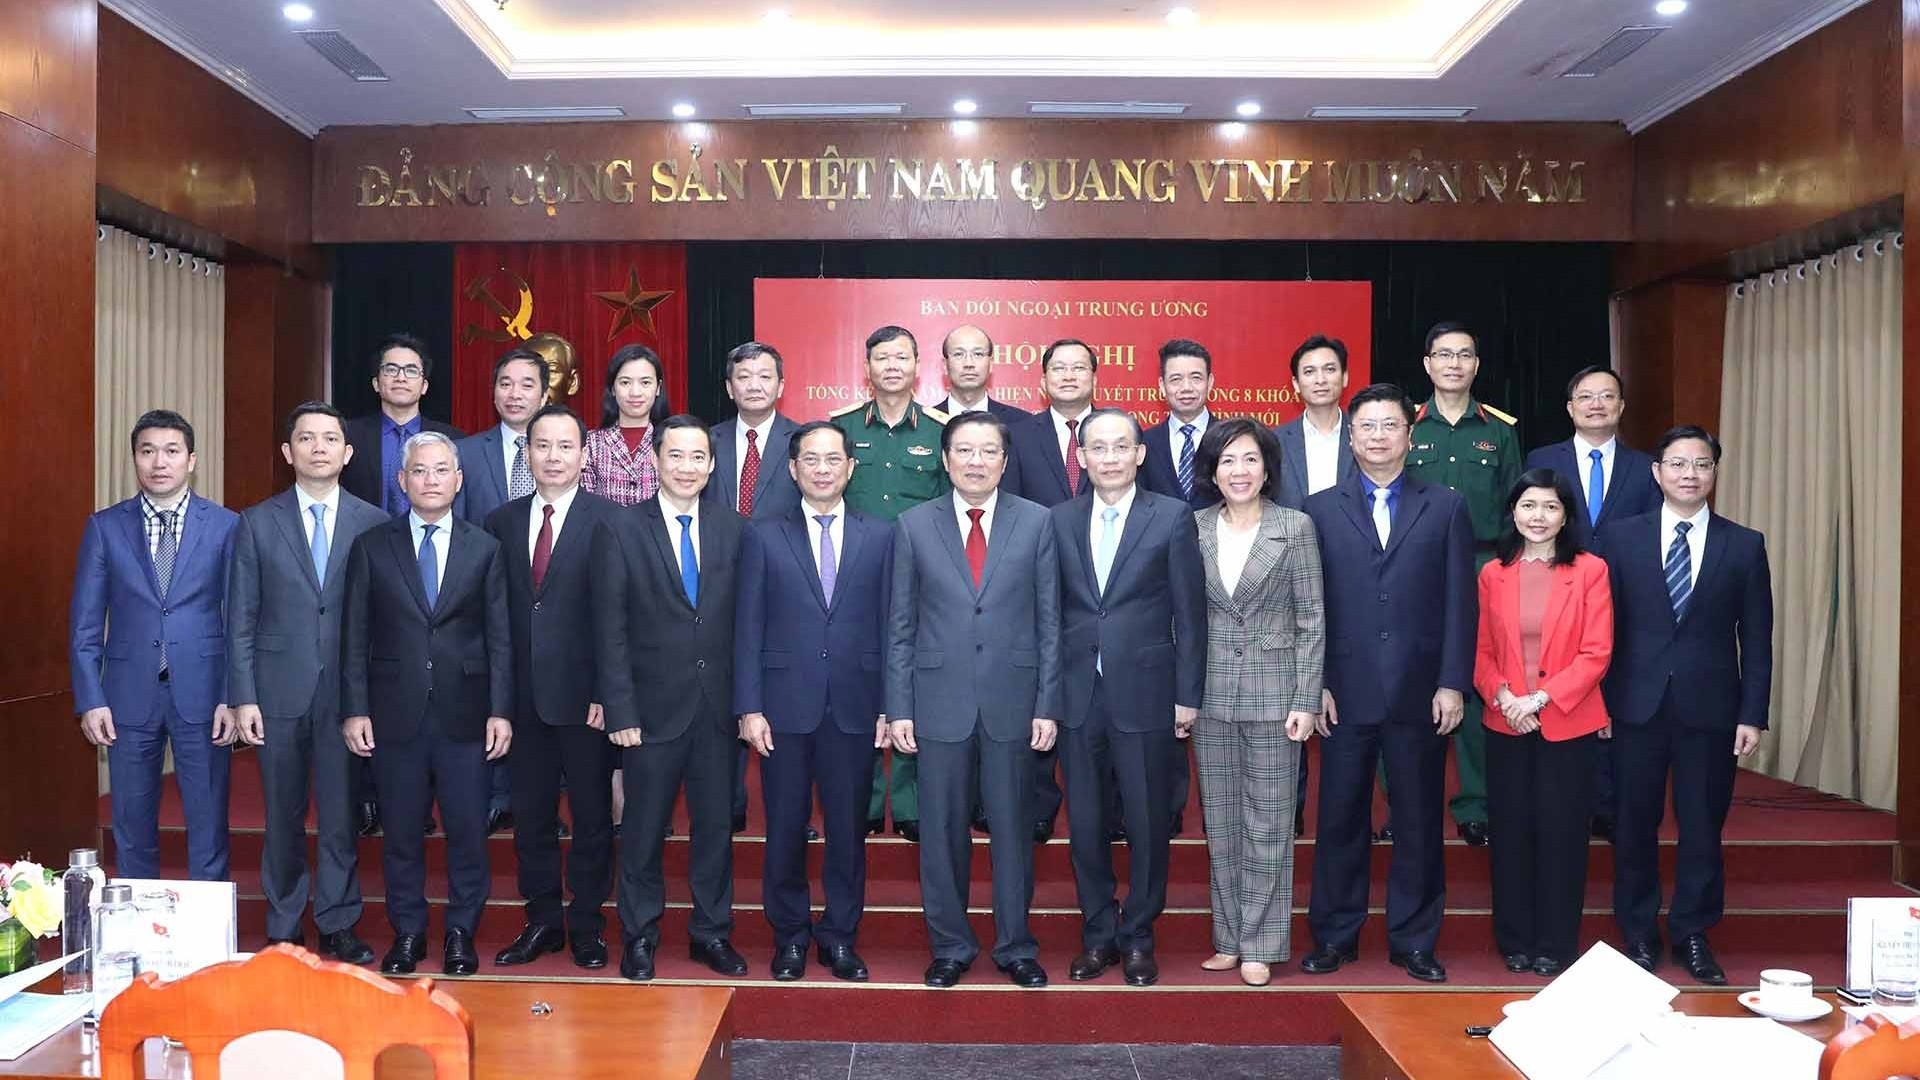 Xây dựng đường lối đối ngoại Việt Nam đáp ứng yêu cầu và nhiệm vụ trong tình hình mới